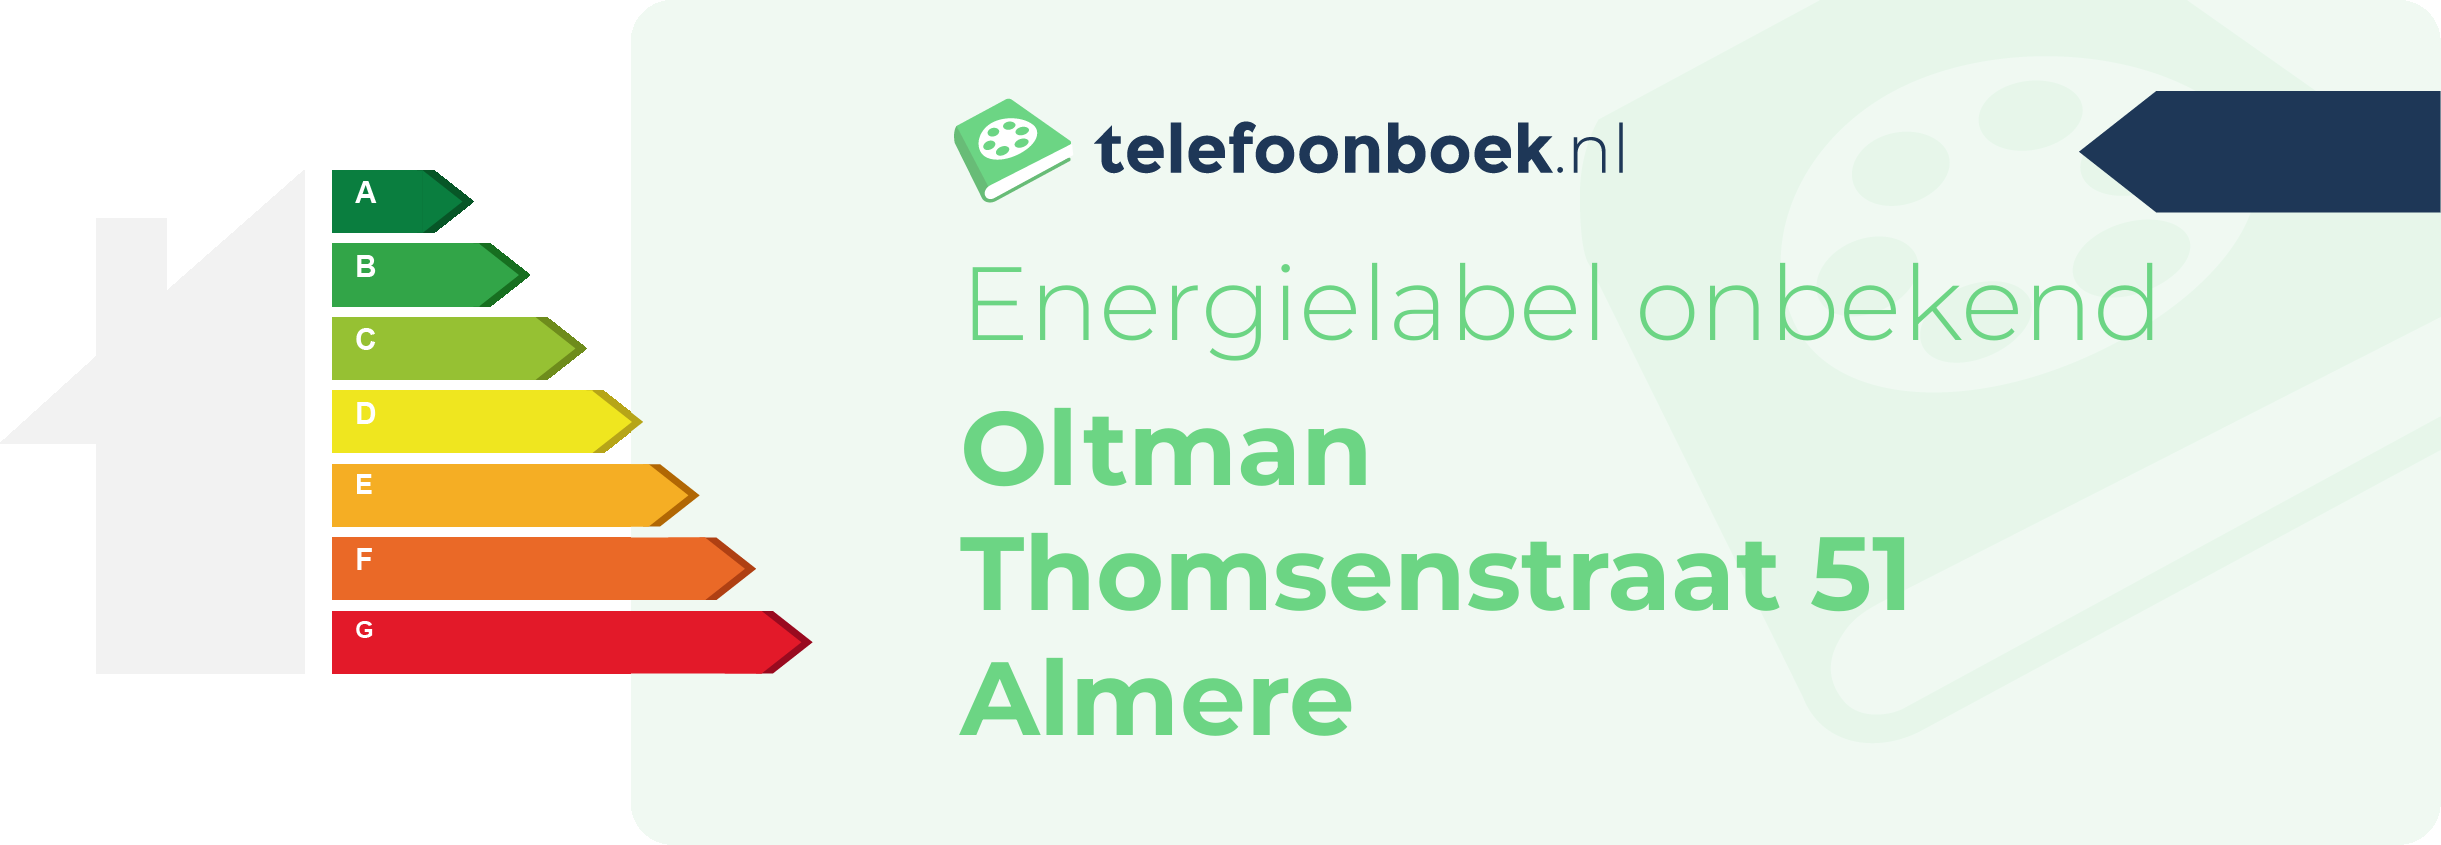 Energielabel Oltman Thomsenstraat 51 Almere